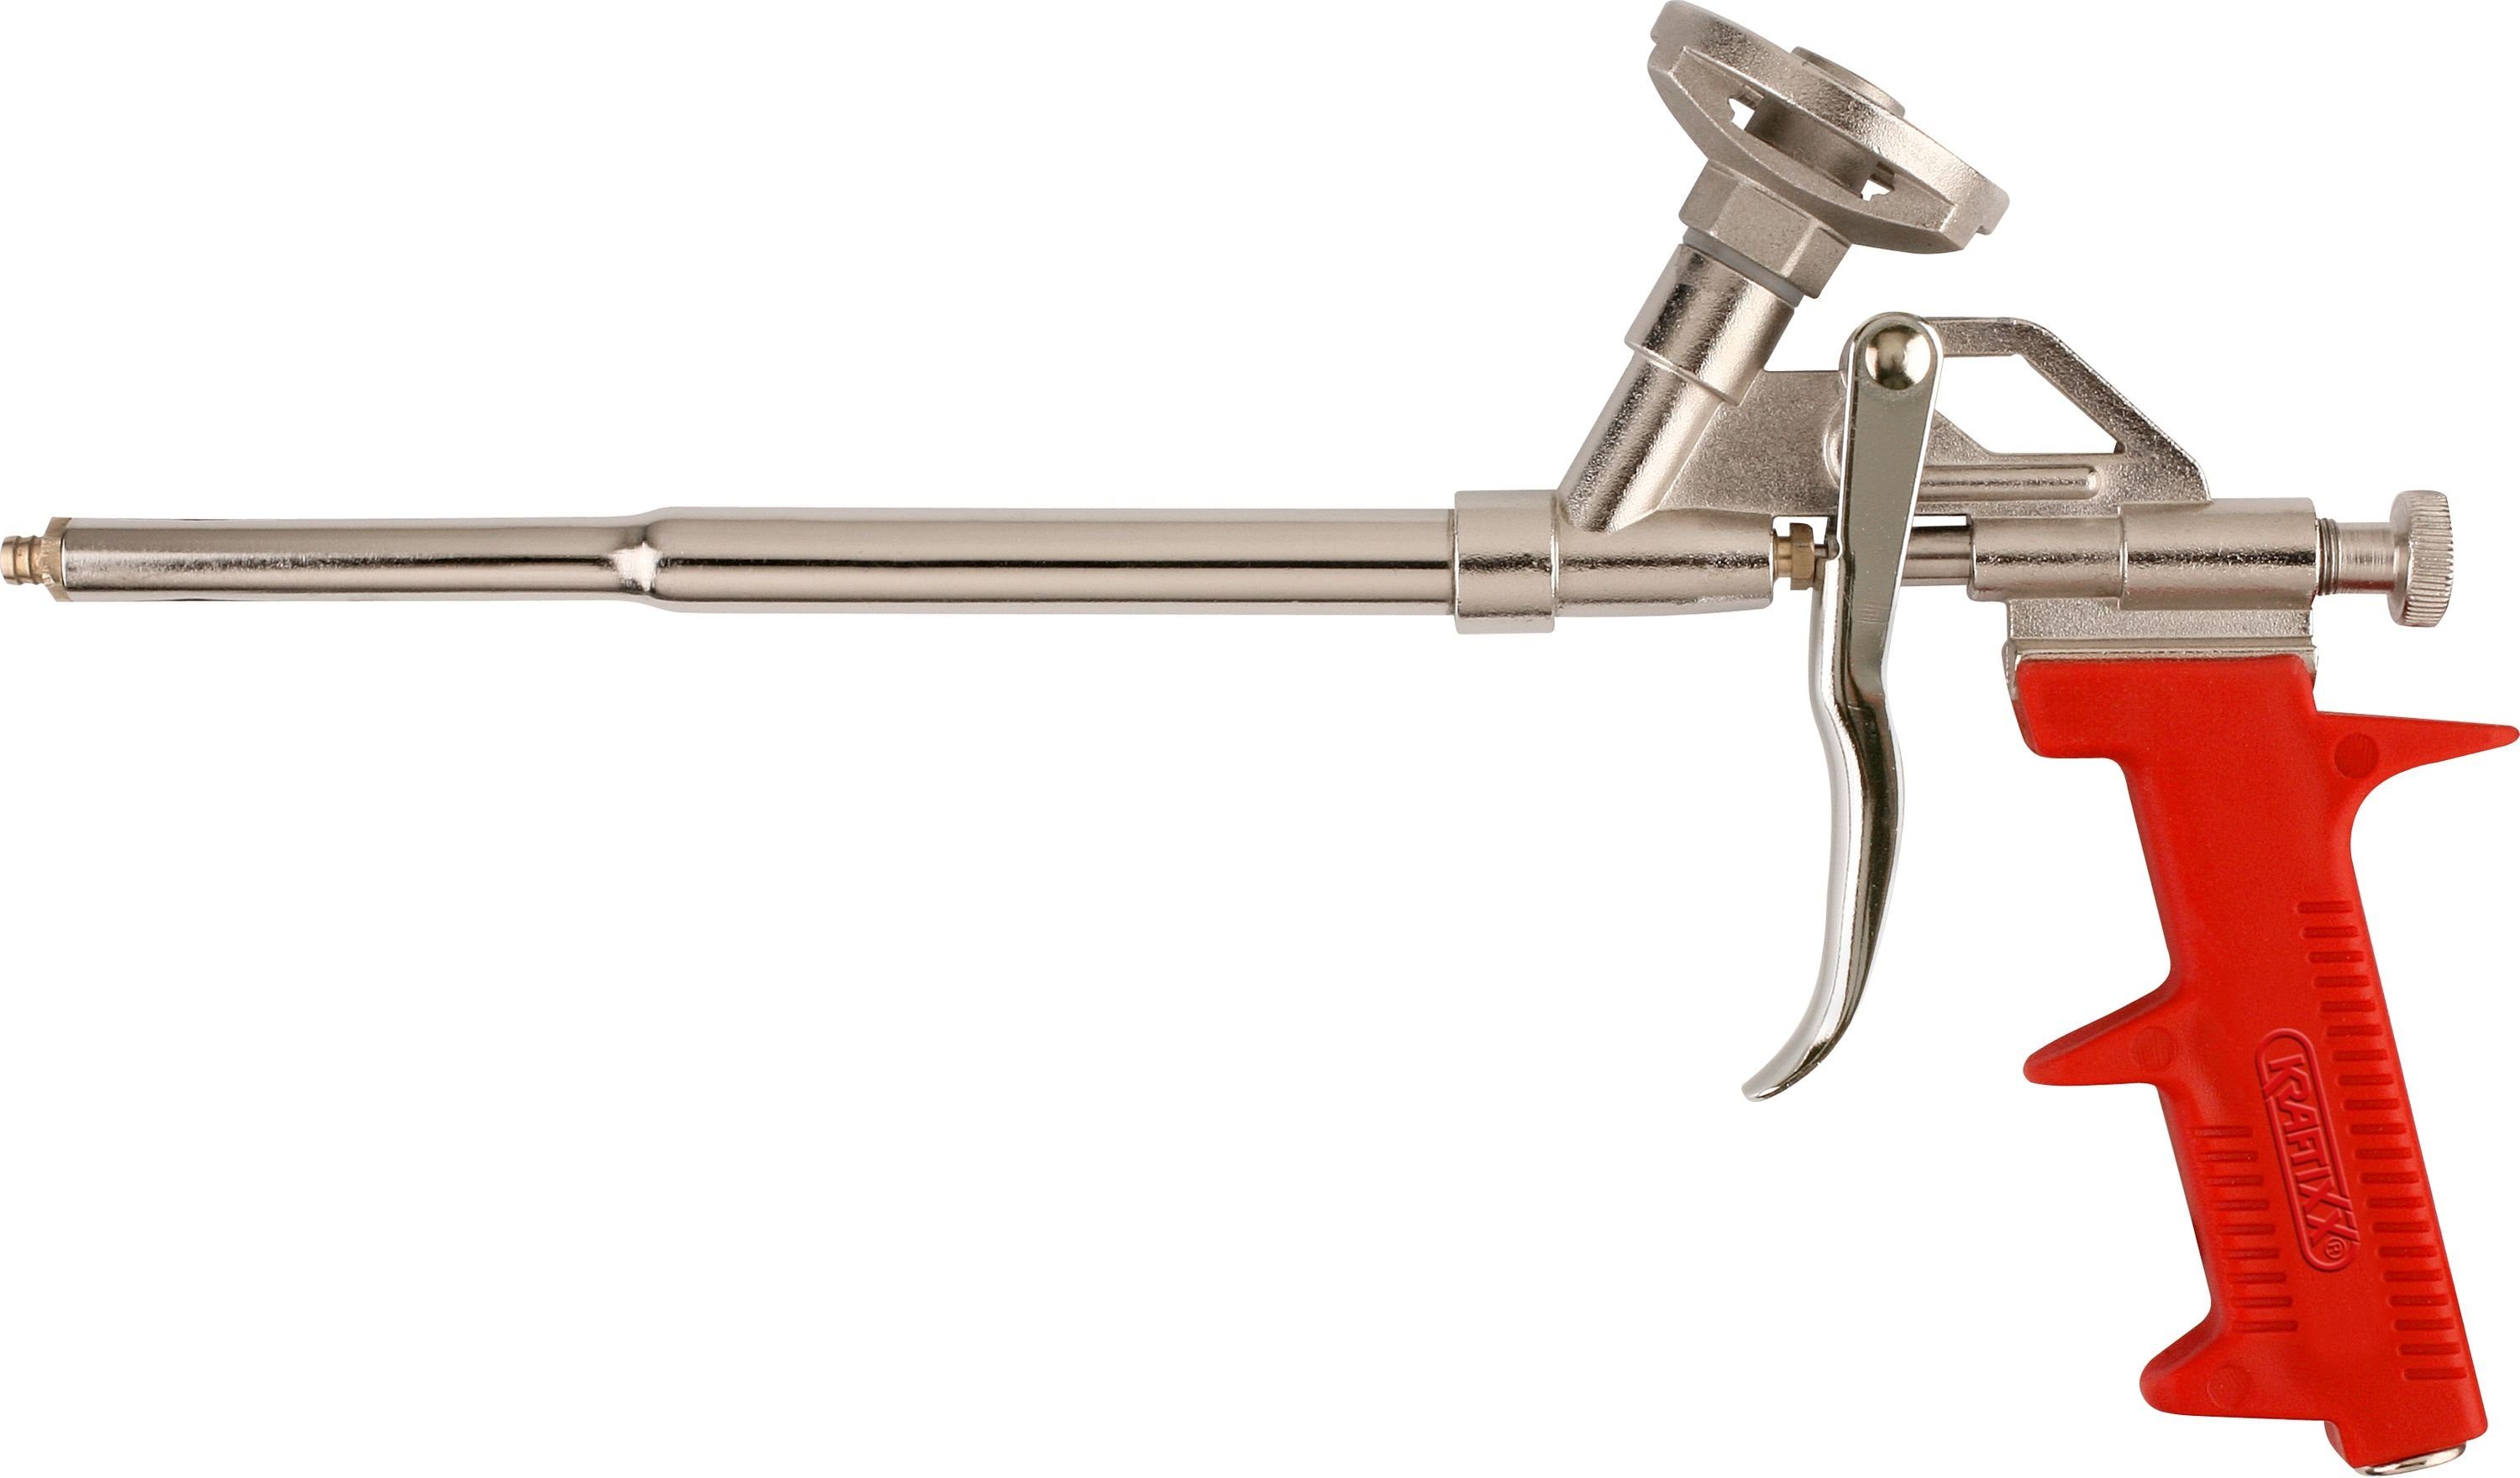 Bauschaumpistole, PU-Bauschaumpistole aus ergonomischem Profi-Dosierpistole mit kwb Metall,